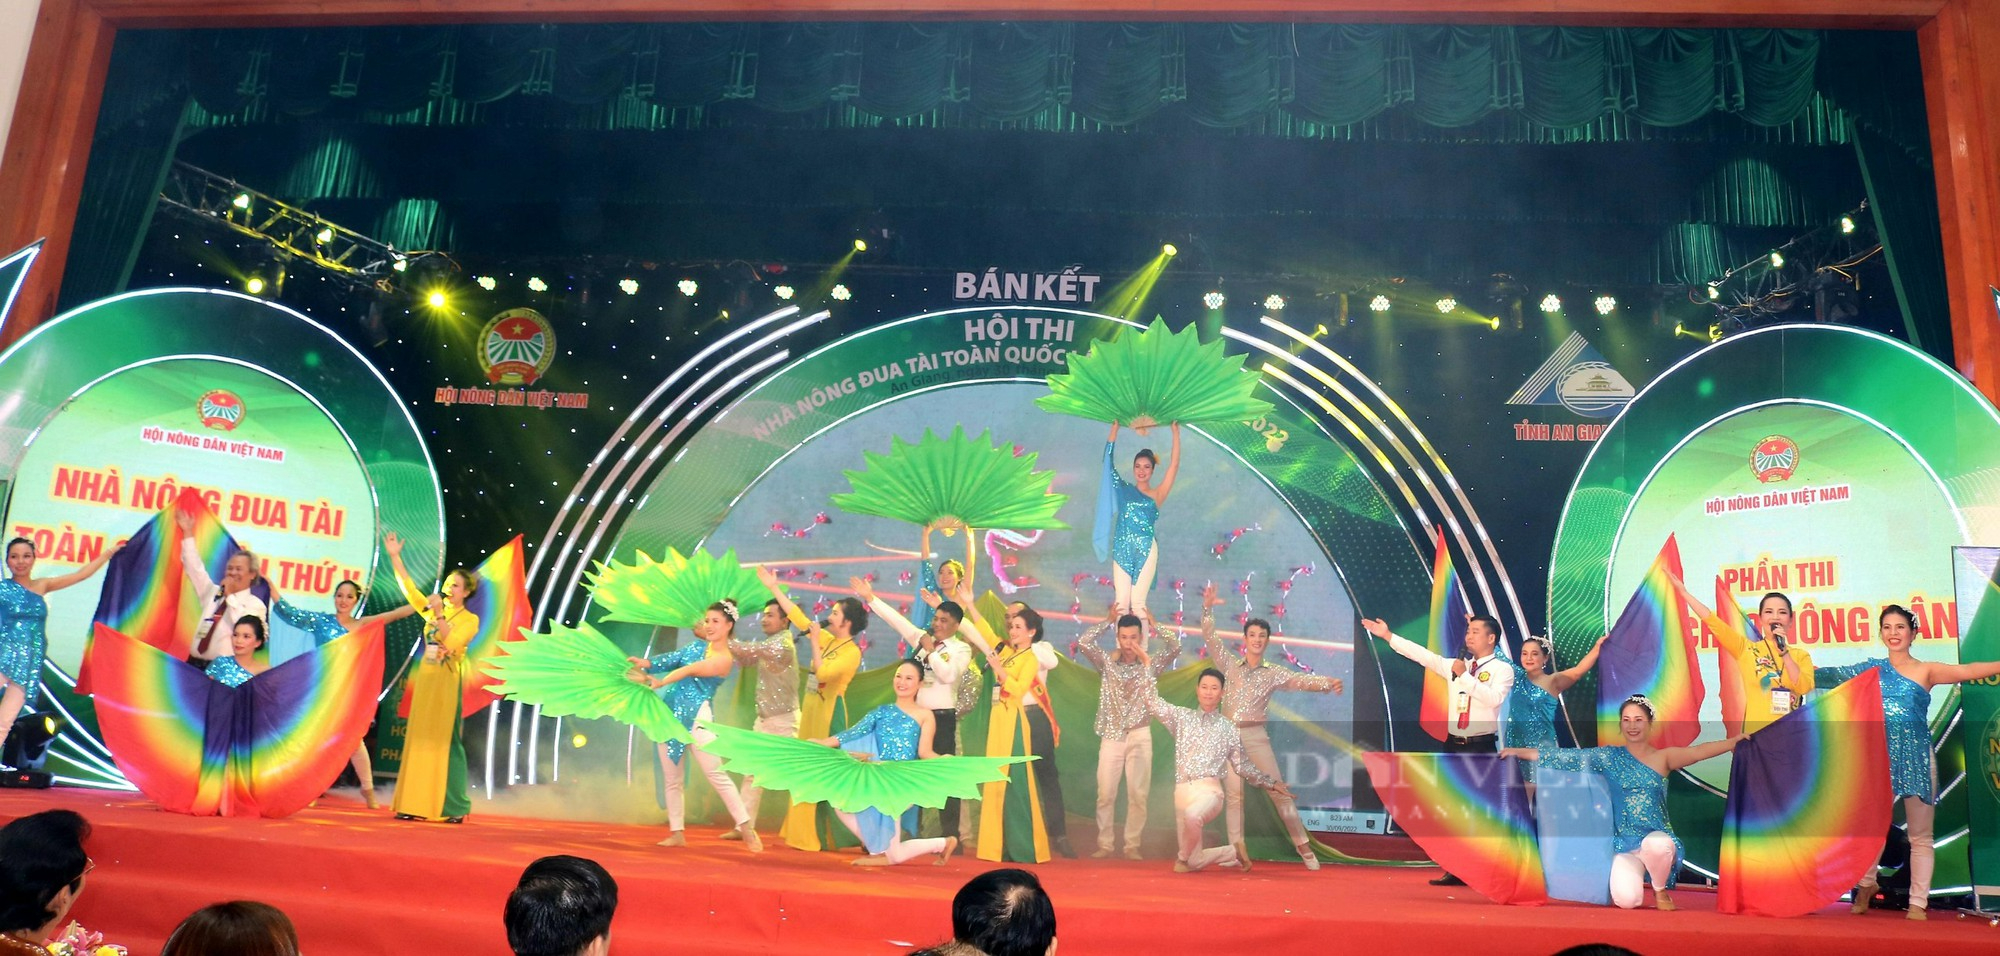 Sôi động vòng thi bán kết Hội thi Nhà Nông đua tài toàn quốc lần thứ V, năm 2022, tại An Giang - Ảnh 5.